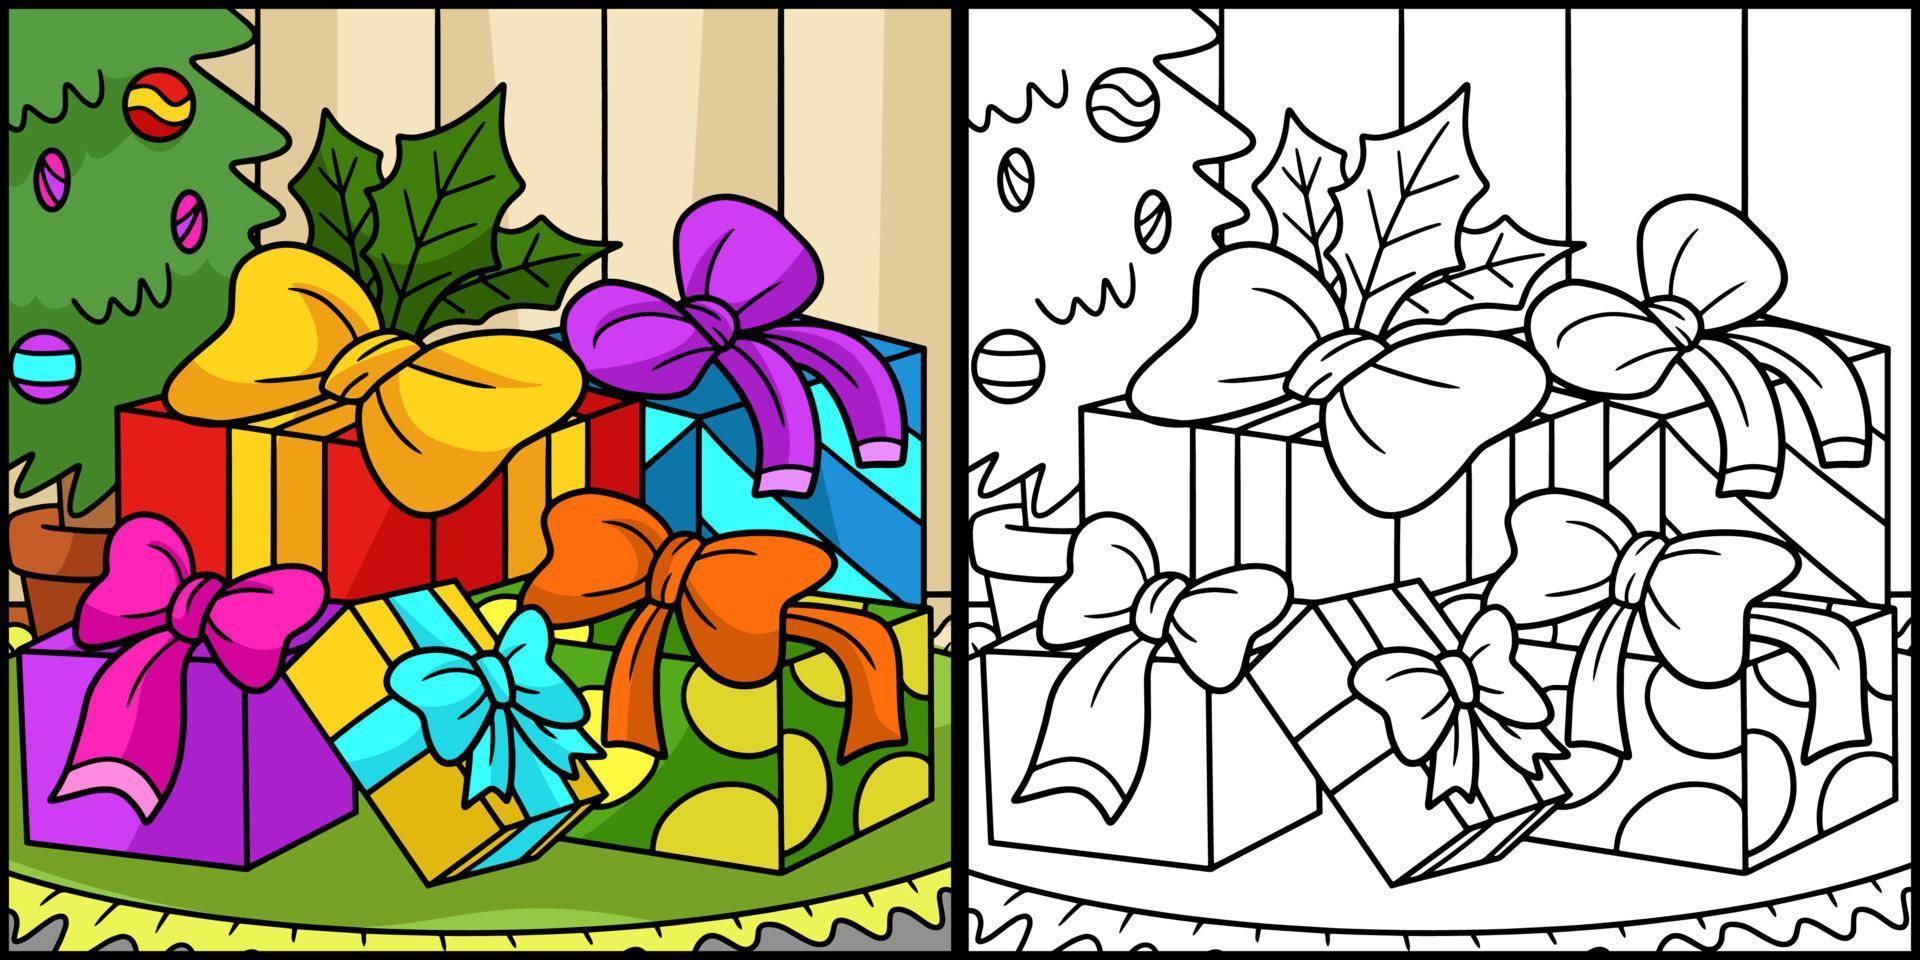 cadeaux de noël coloriage illustration colorée vecteur